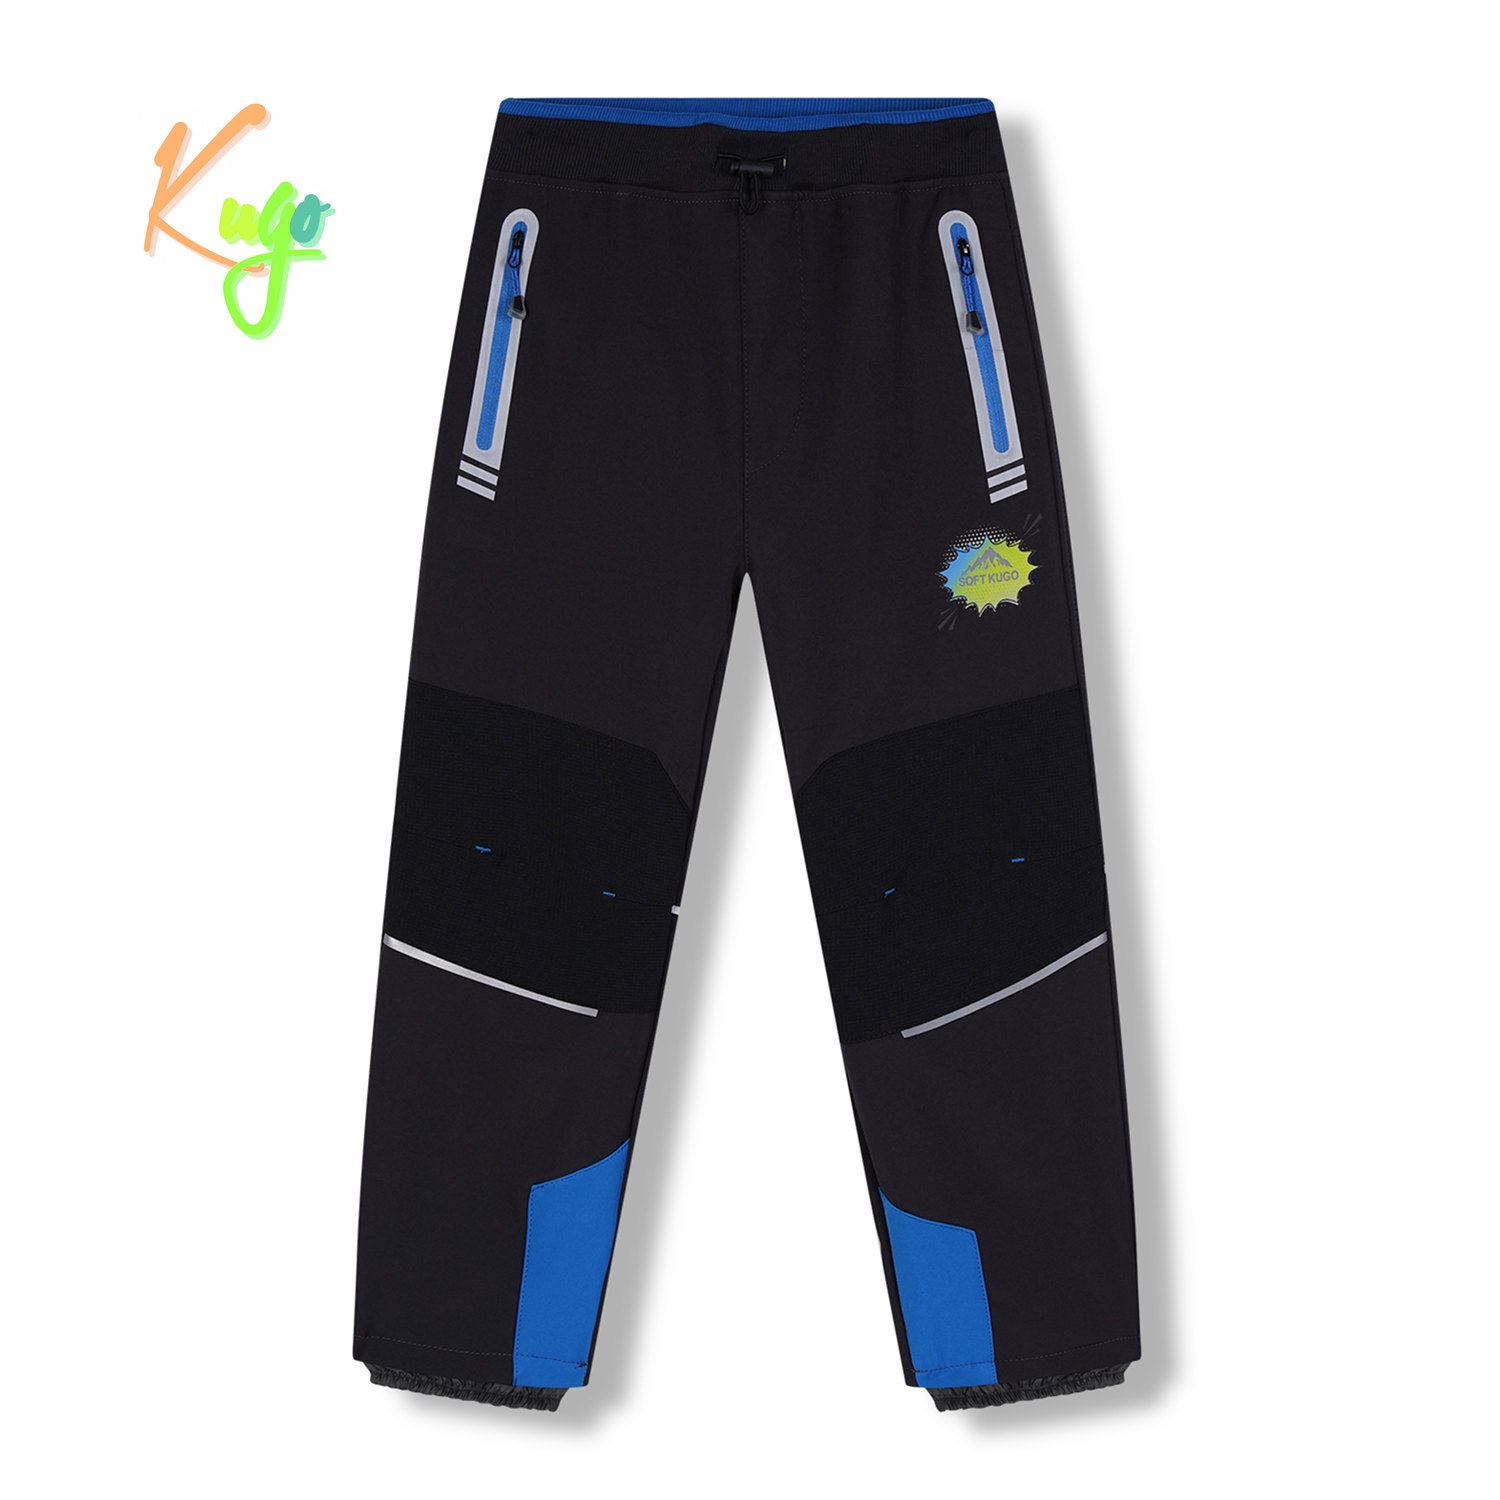 Chlapecké softshellové kalhoty, zateplené - KUGO HK5622, tmavě šedá / modré zipy Barva: Šedá, Velikost: 128